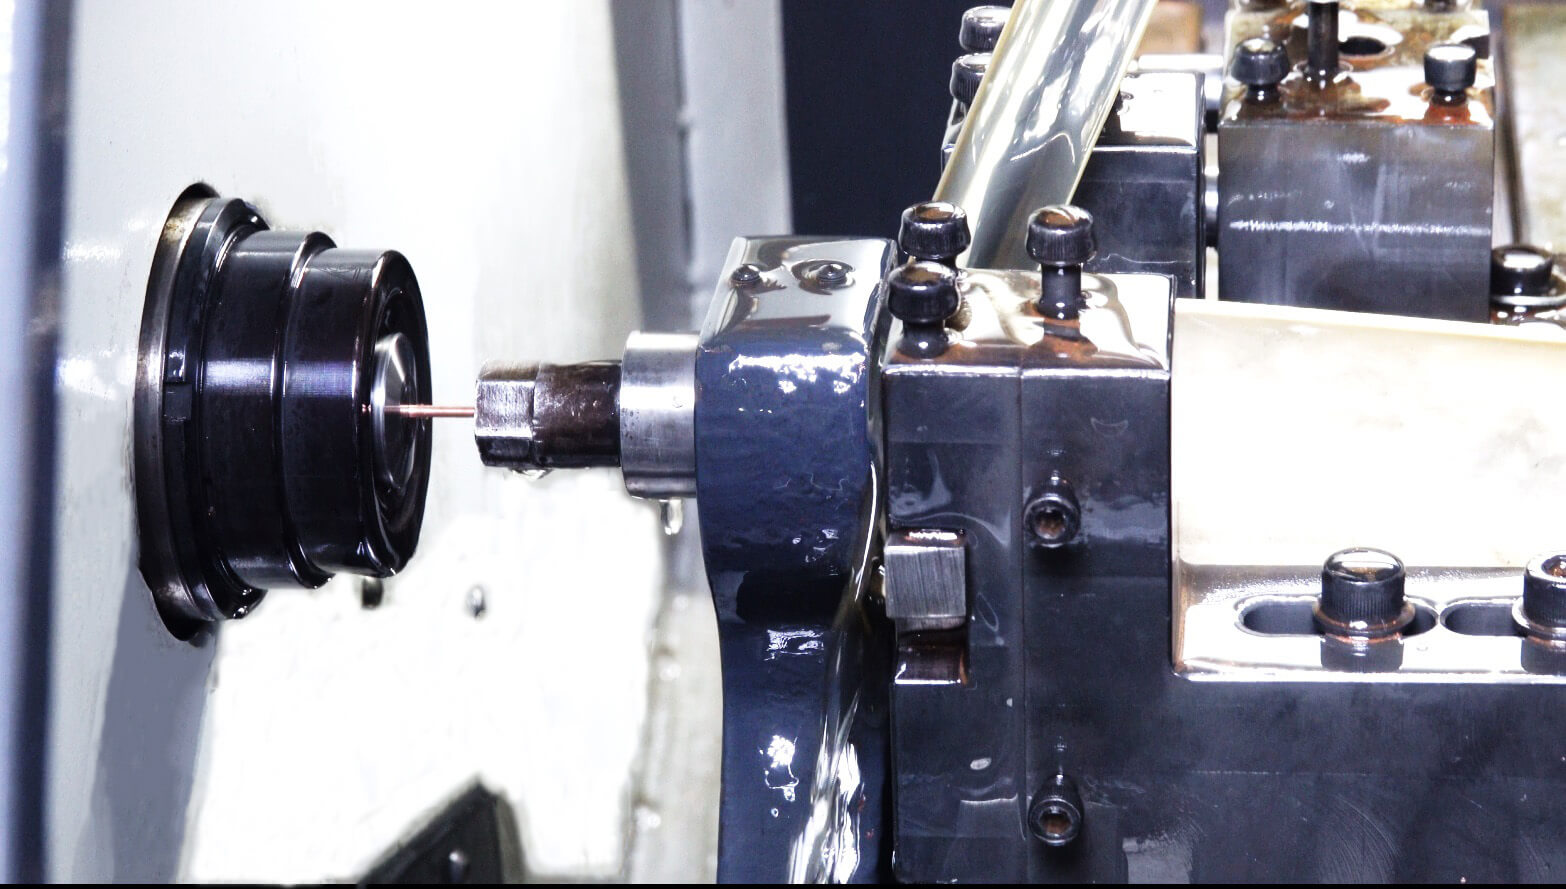 CNC turning machine - 2